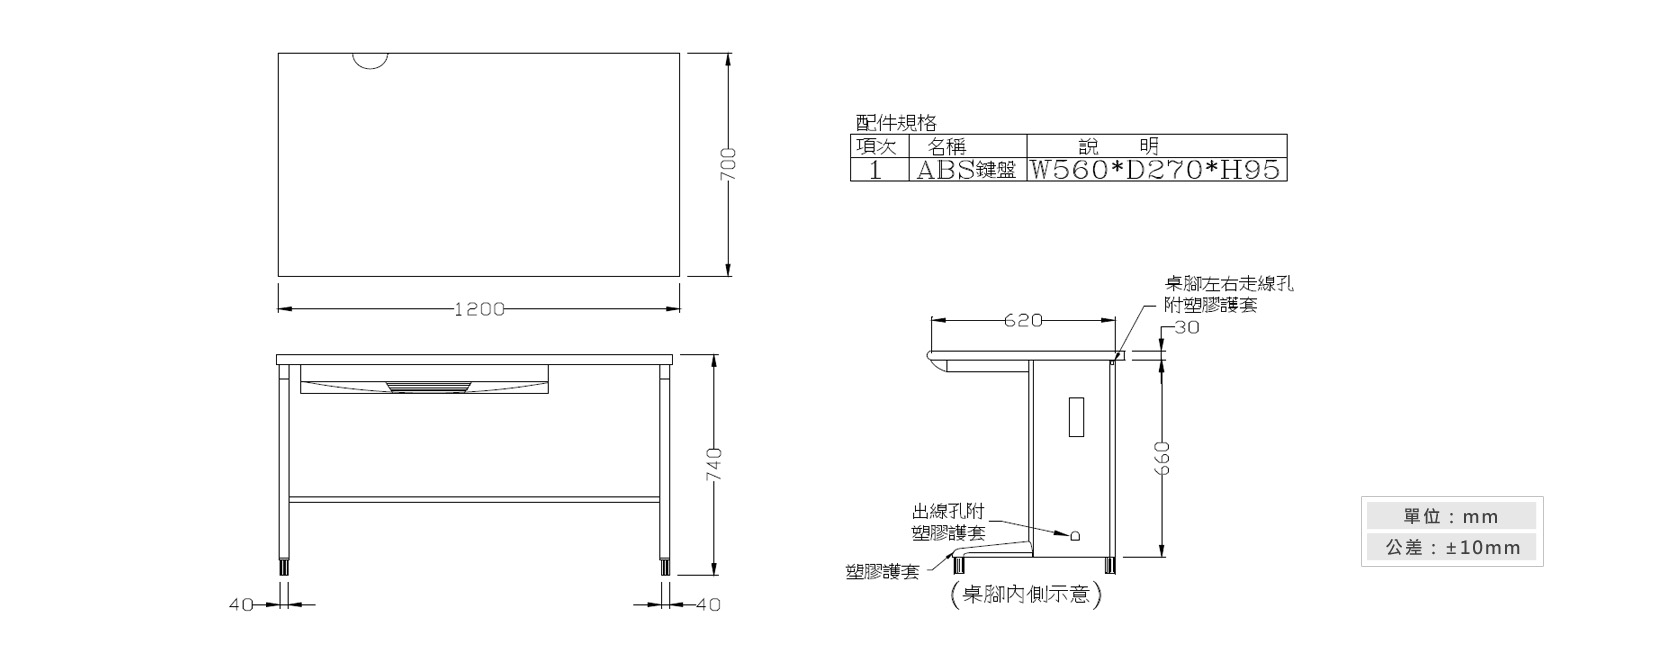 1-18 OA-120辦公桌(附一只ABS鍵盤架)材質說明